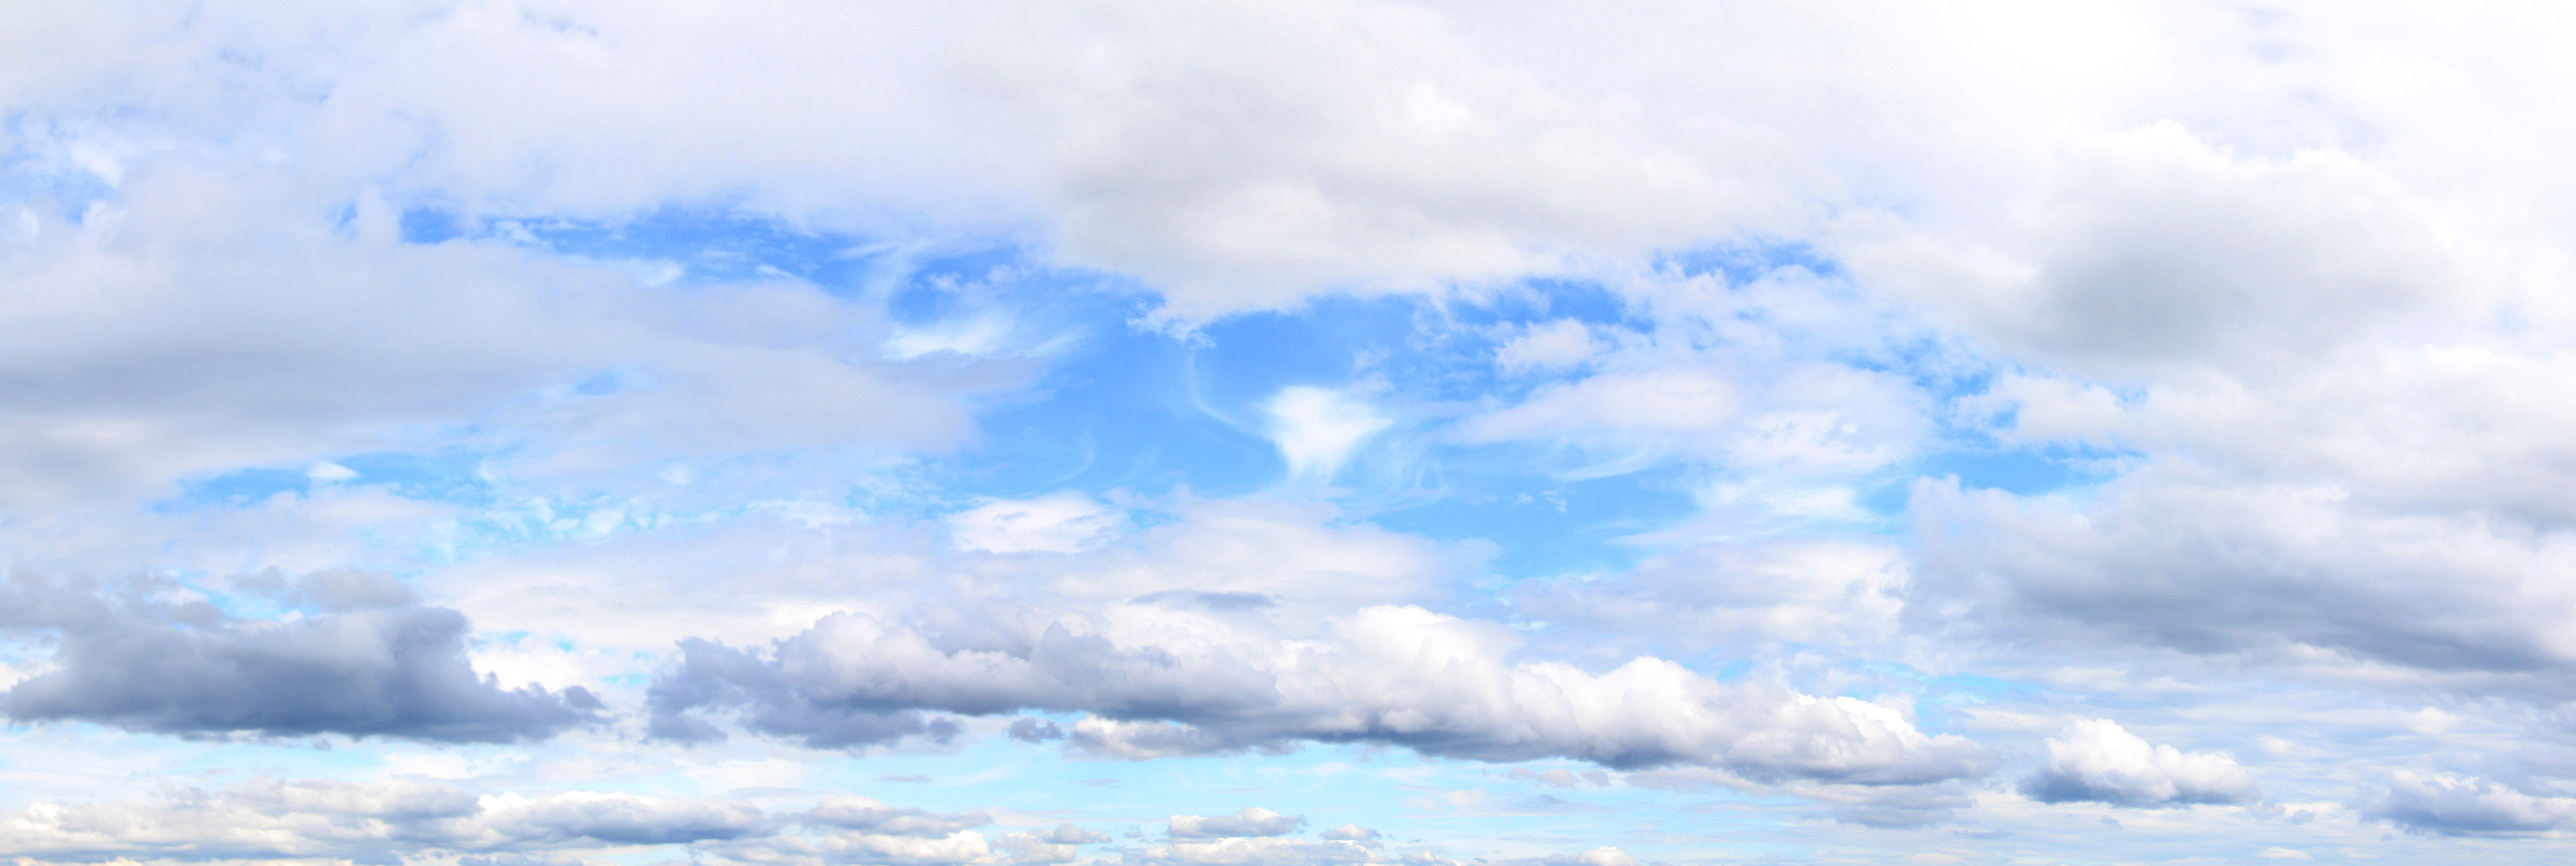 Cloudy Sky Texture - HD Wallpaper 